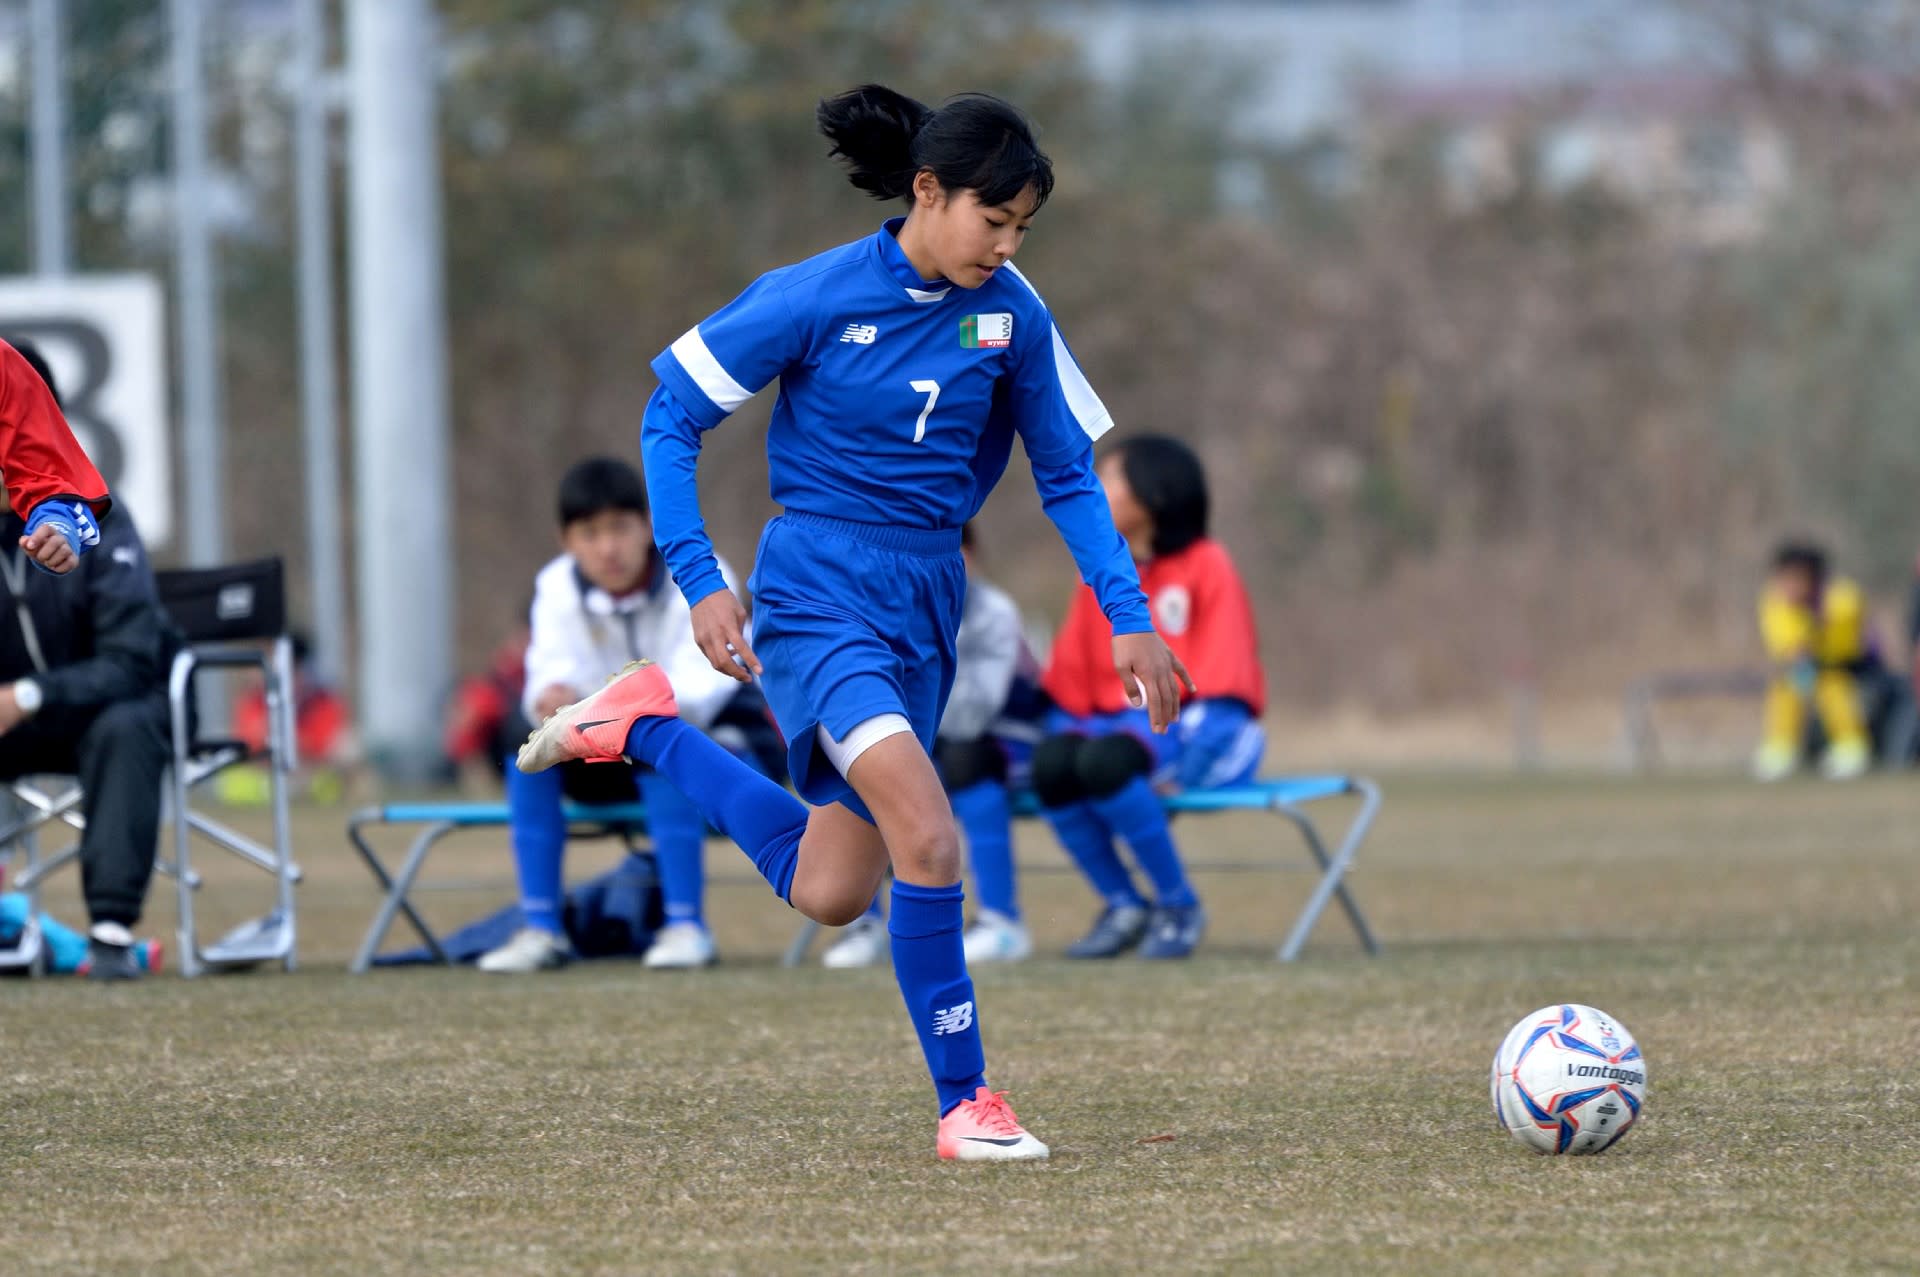 愛知県小学生女子サッカー選手権大会 決勝トーナメント 準決勝 Mickeyの徒然なるままに